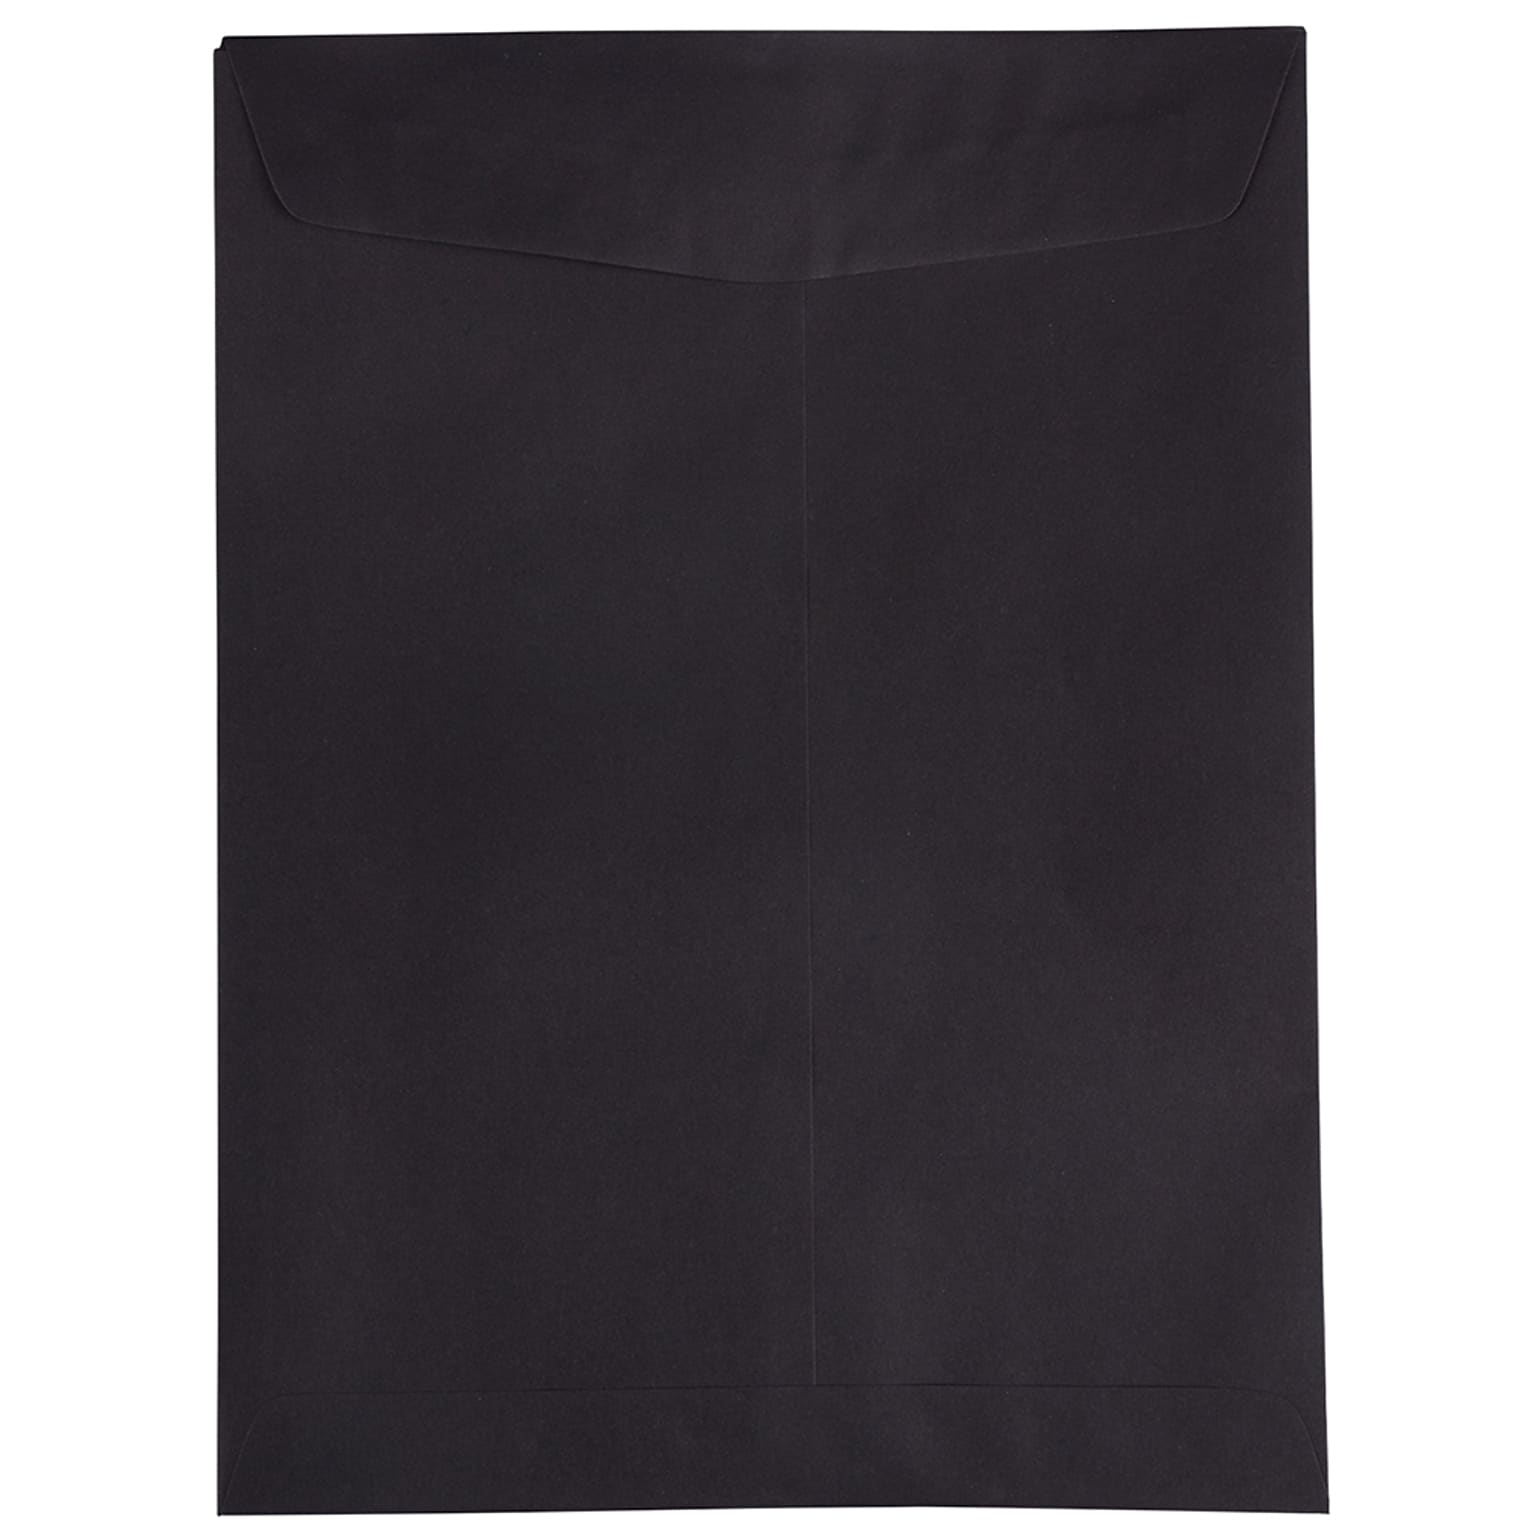 JAM Paper 9 x 12 Open End Catalog Envelopes, Black, 50/Pack (v01225i)